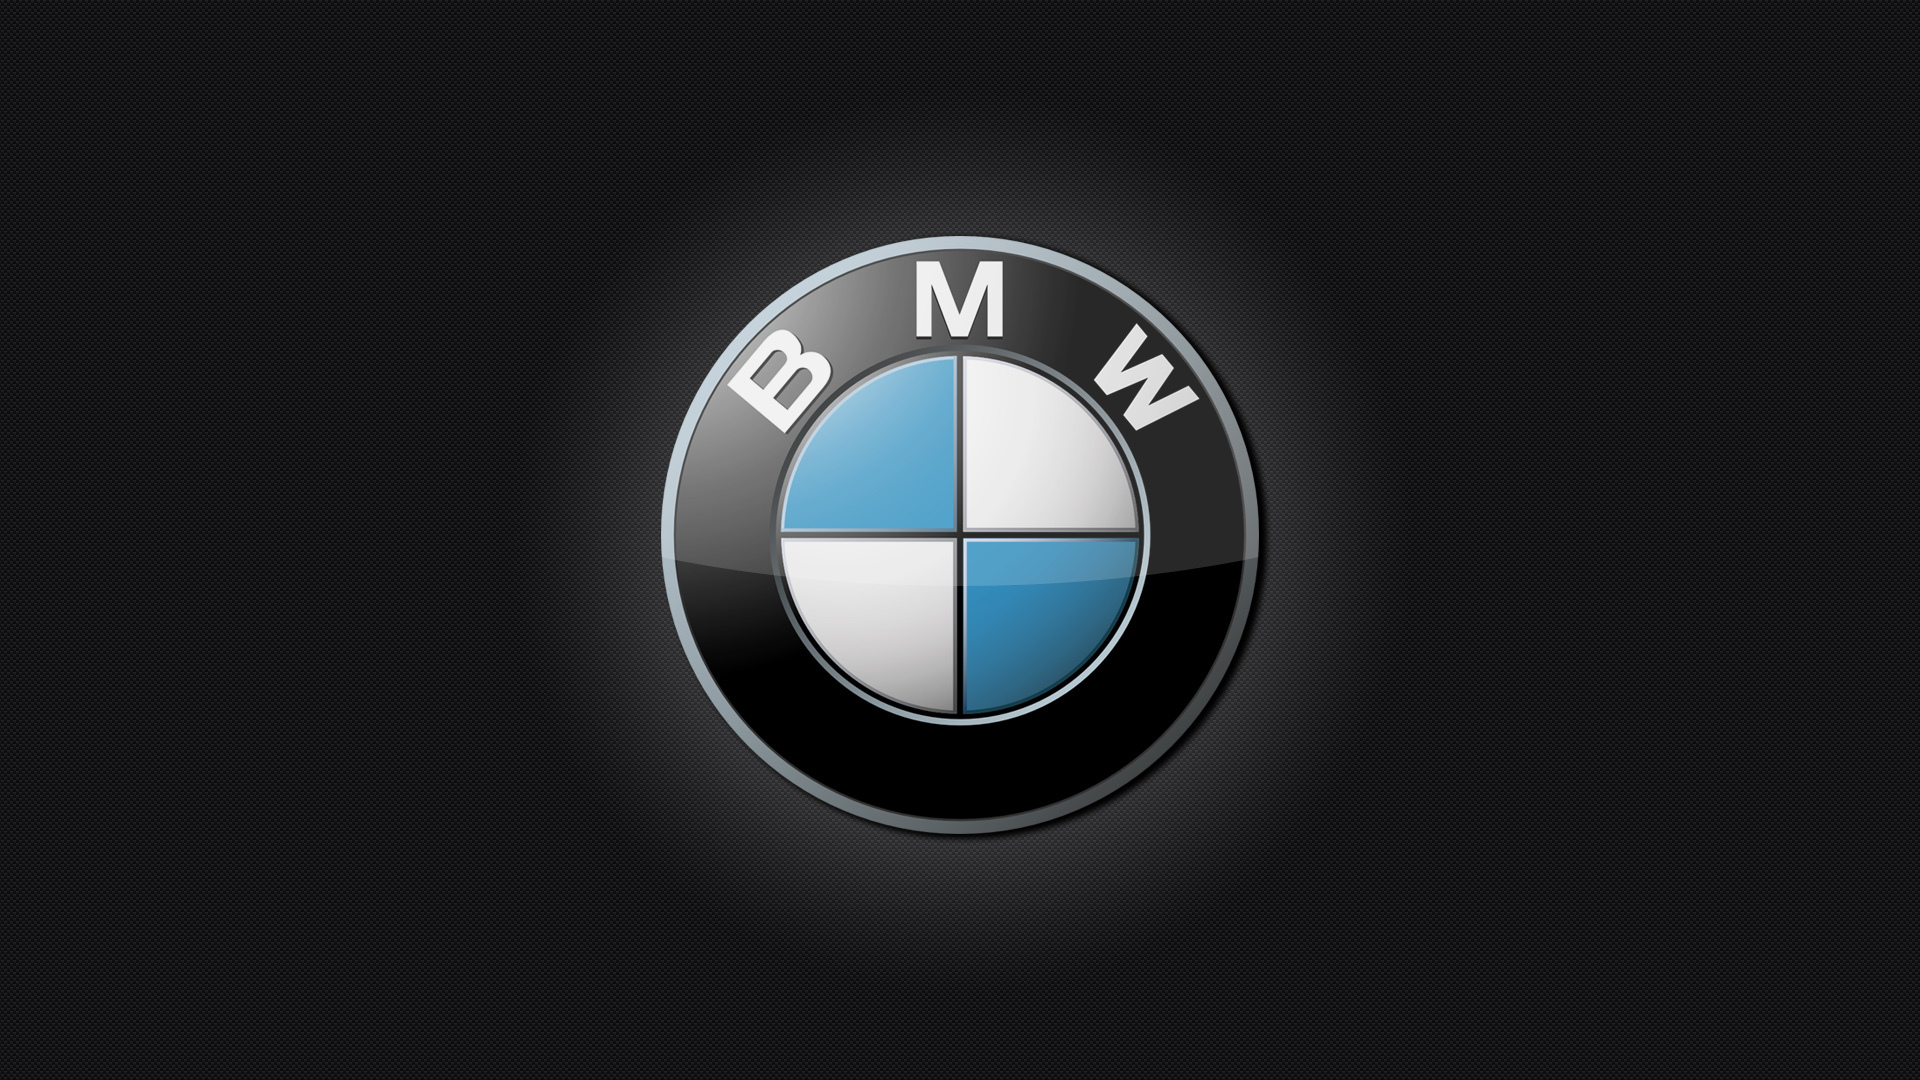 Фото на аву логотипа БМВ